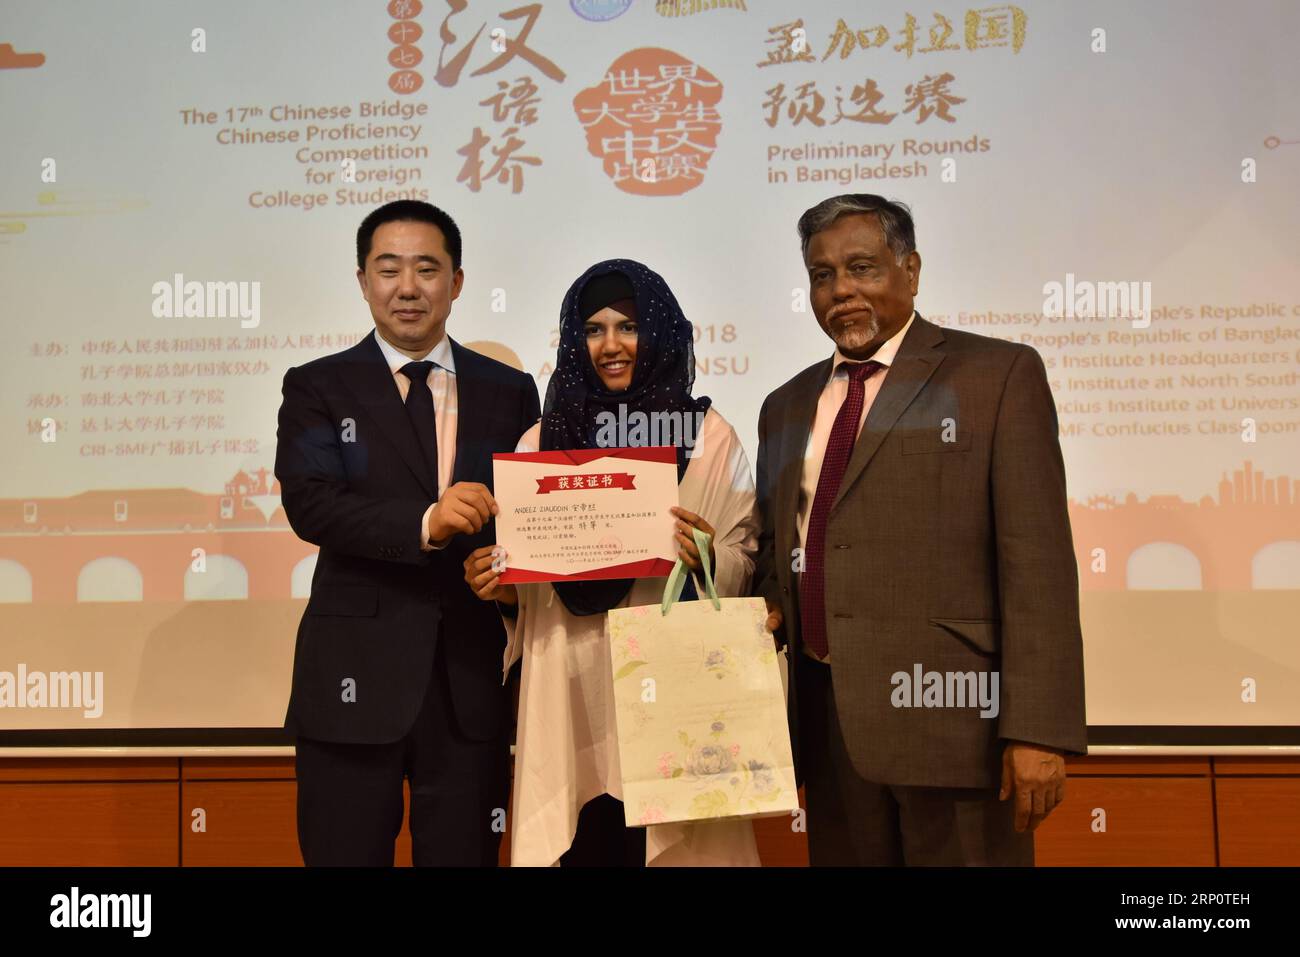 (180524) -- DHAKA, le 24 mai 2018 () -- l'ambassadeur de Chine au Bangladesh, Zhang Zuo (à gauche), remet un certificat au vainqueur de la compétition Chinese Bridge à Dhaka, Bangladesh, le 24 mai 2018. Un concours de maîtrise de la langue chinoise pour les étudiants universitaires a eu lieu ici jeudi pour sélectionner un jeune pour représenter le Bangladesh à la compétition finale Chinese Bridge. () BANGLADESH-DHAKA-CHINESE BRIDGE-COMPETITION Xinhua PUBLICATIONxNOTxINxCHN Banque D'Images